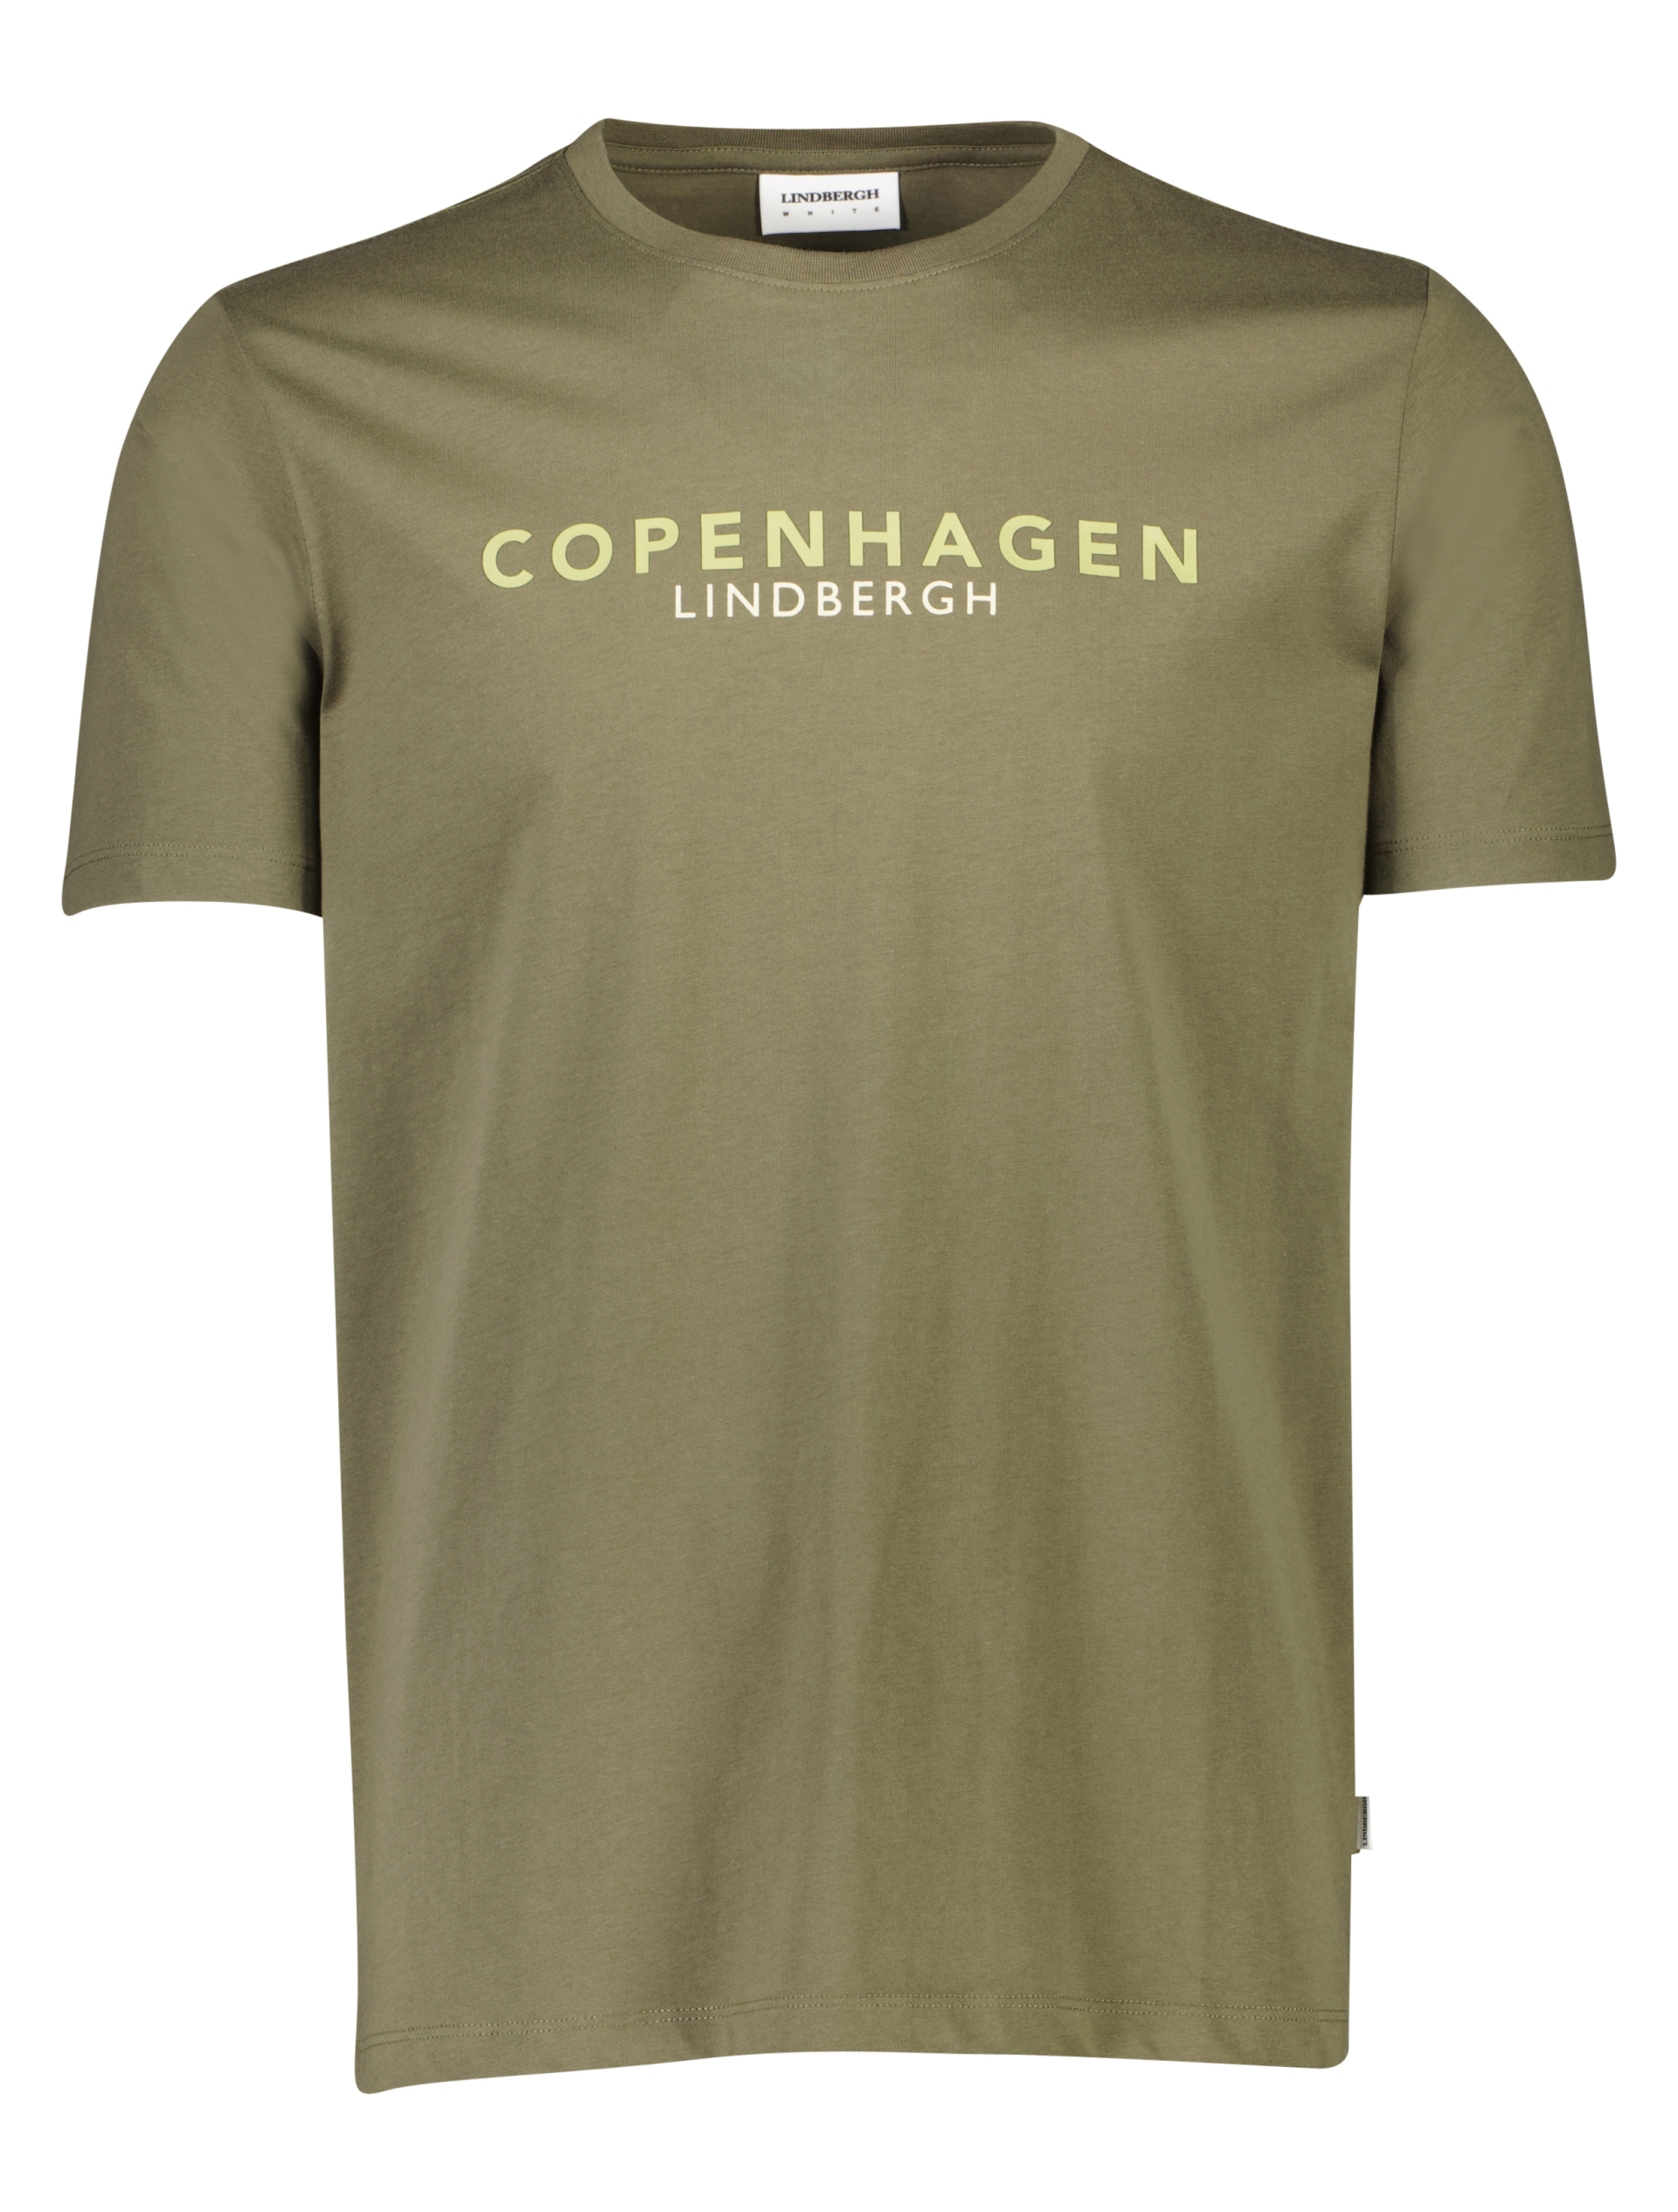 Lindbergh T-shirt grøn / lt army 124